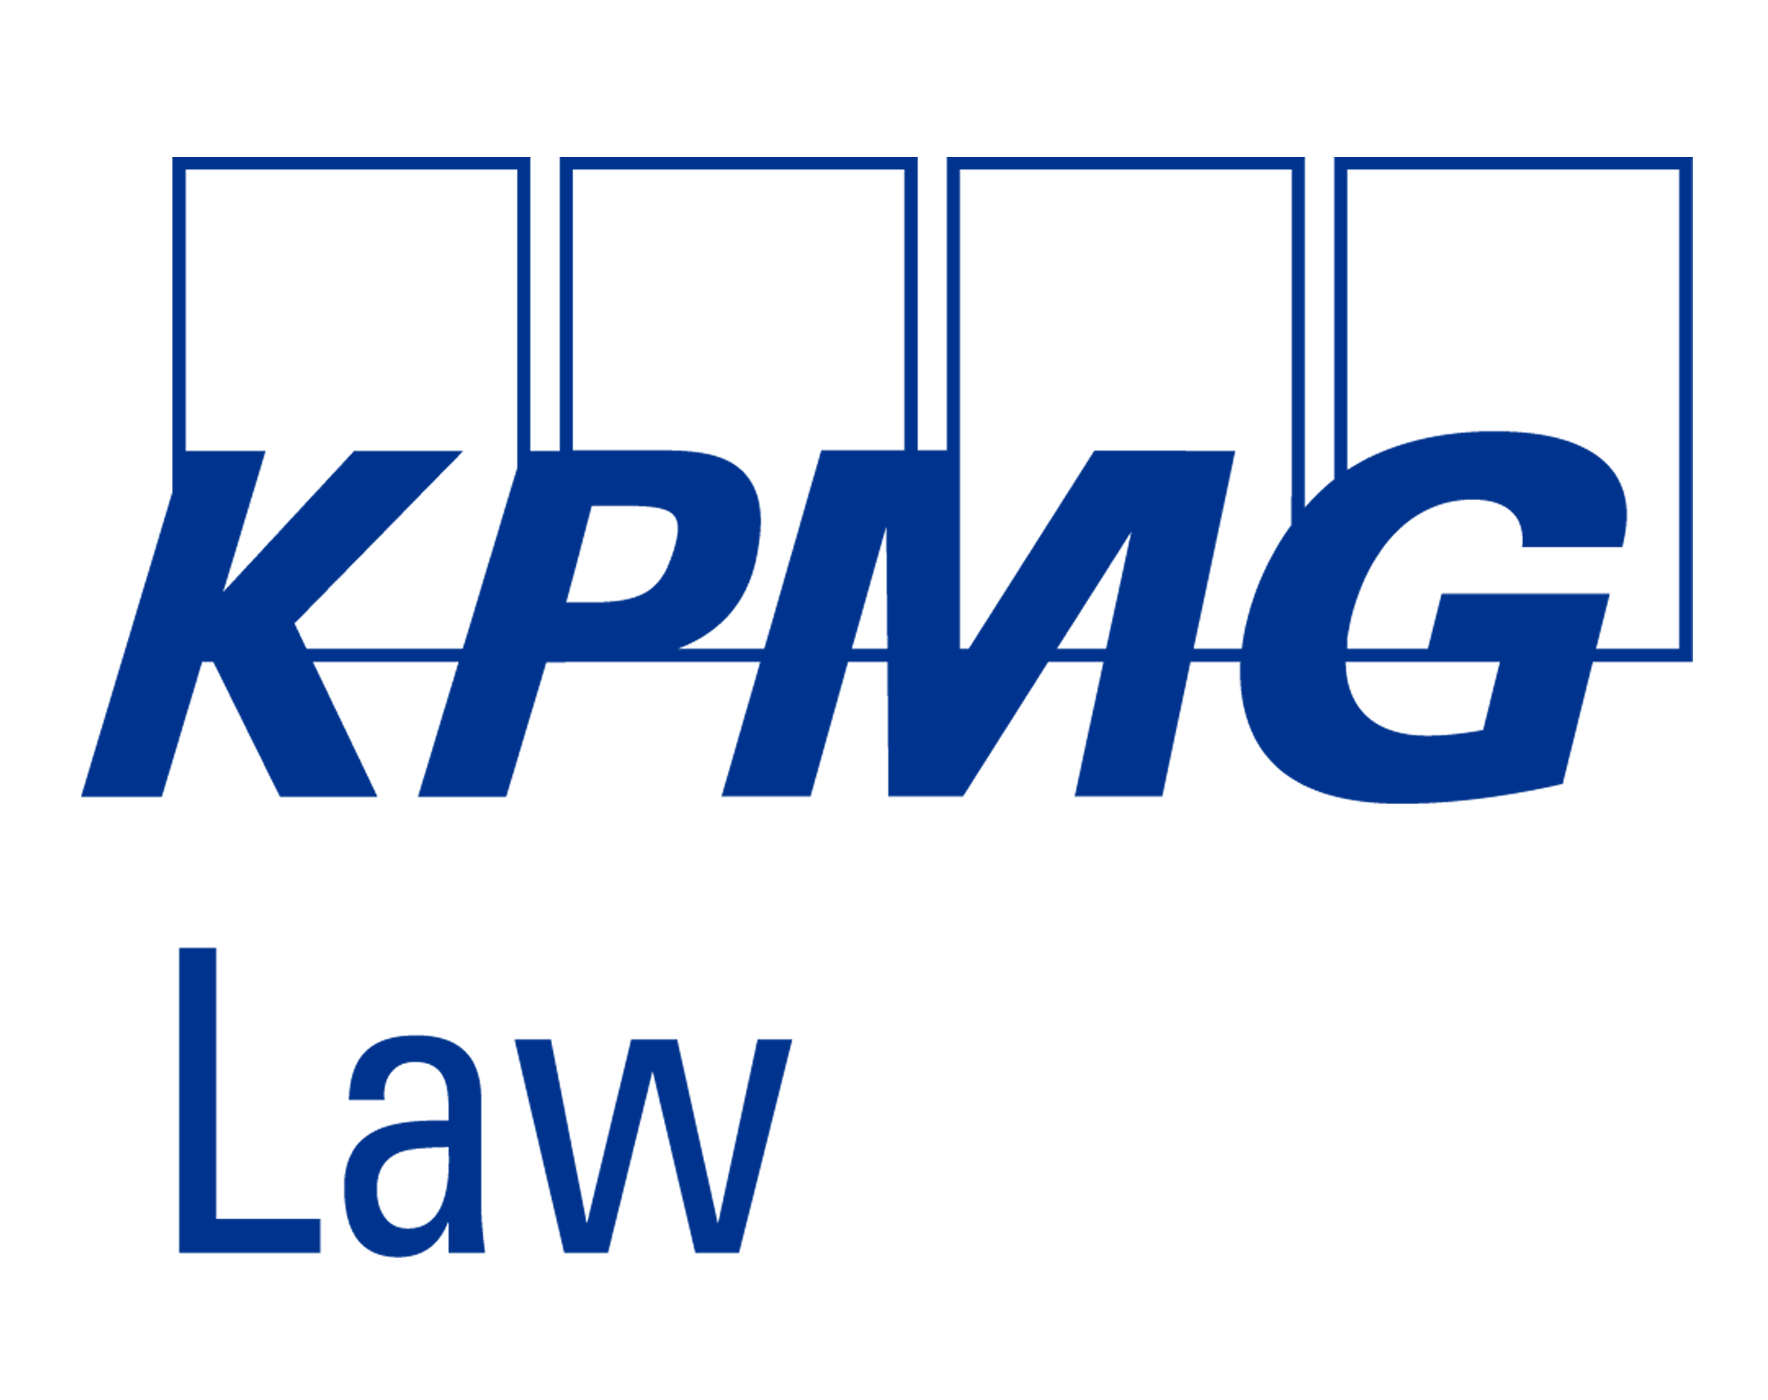 KPMG Law